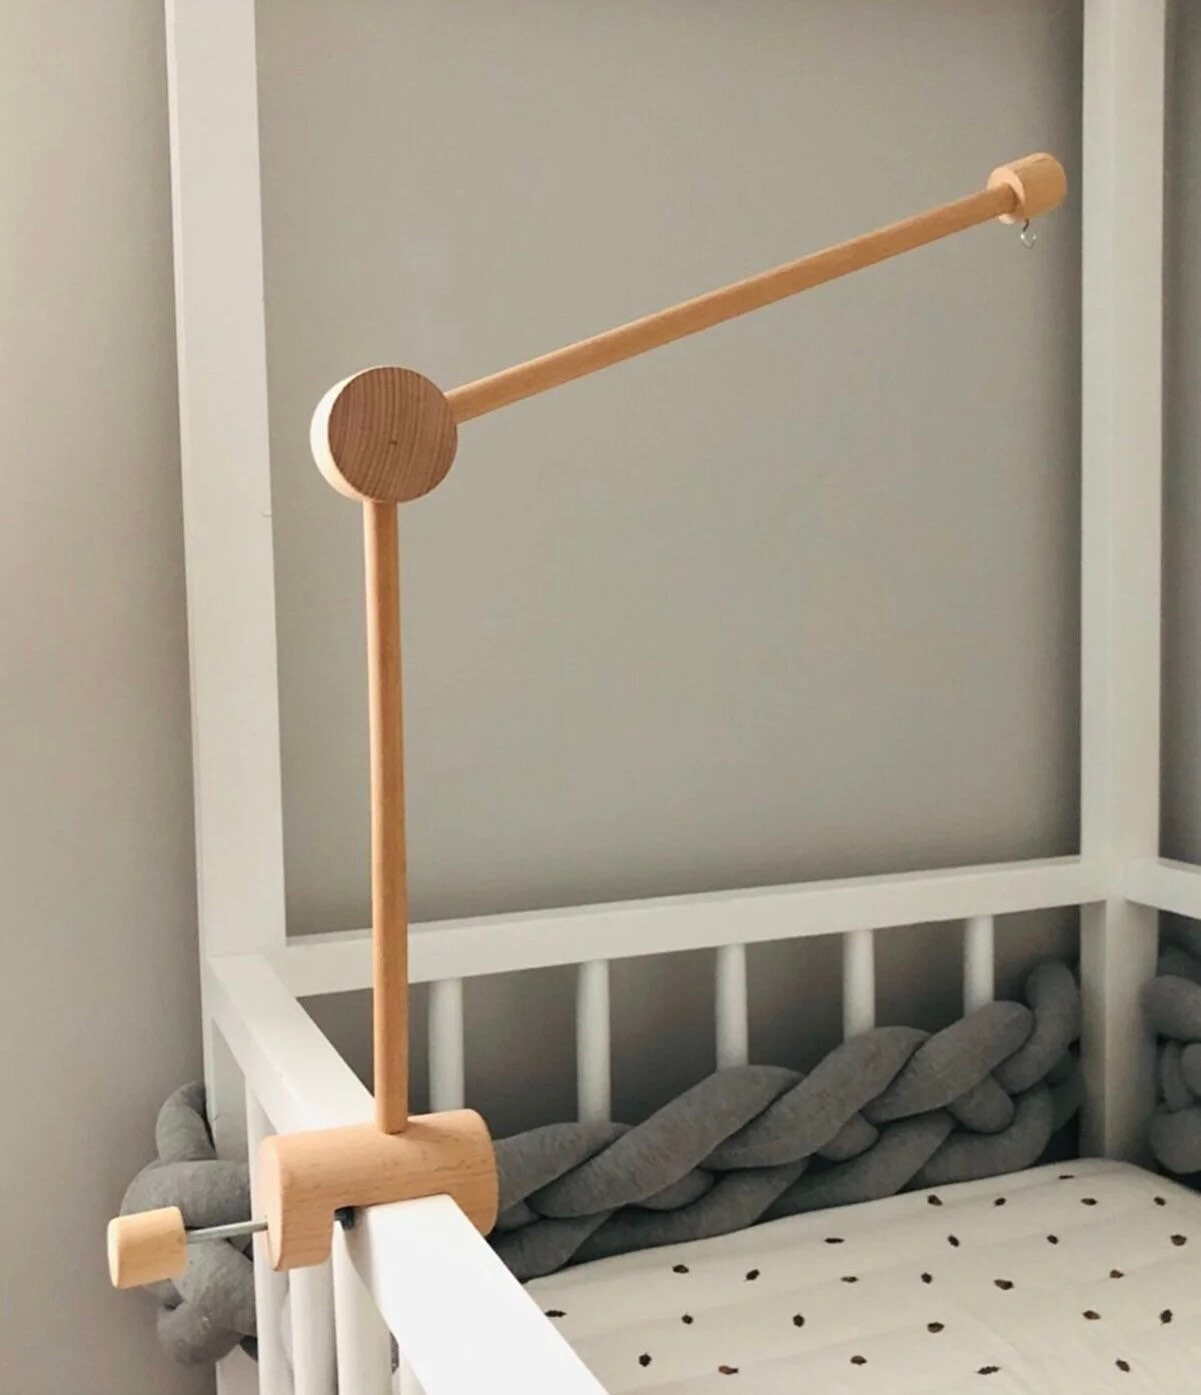 Support mobile en bois de hêtre pour le lit bébé -  France